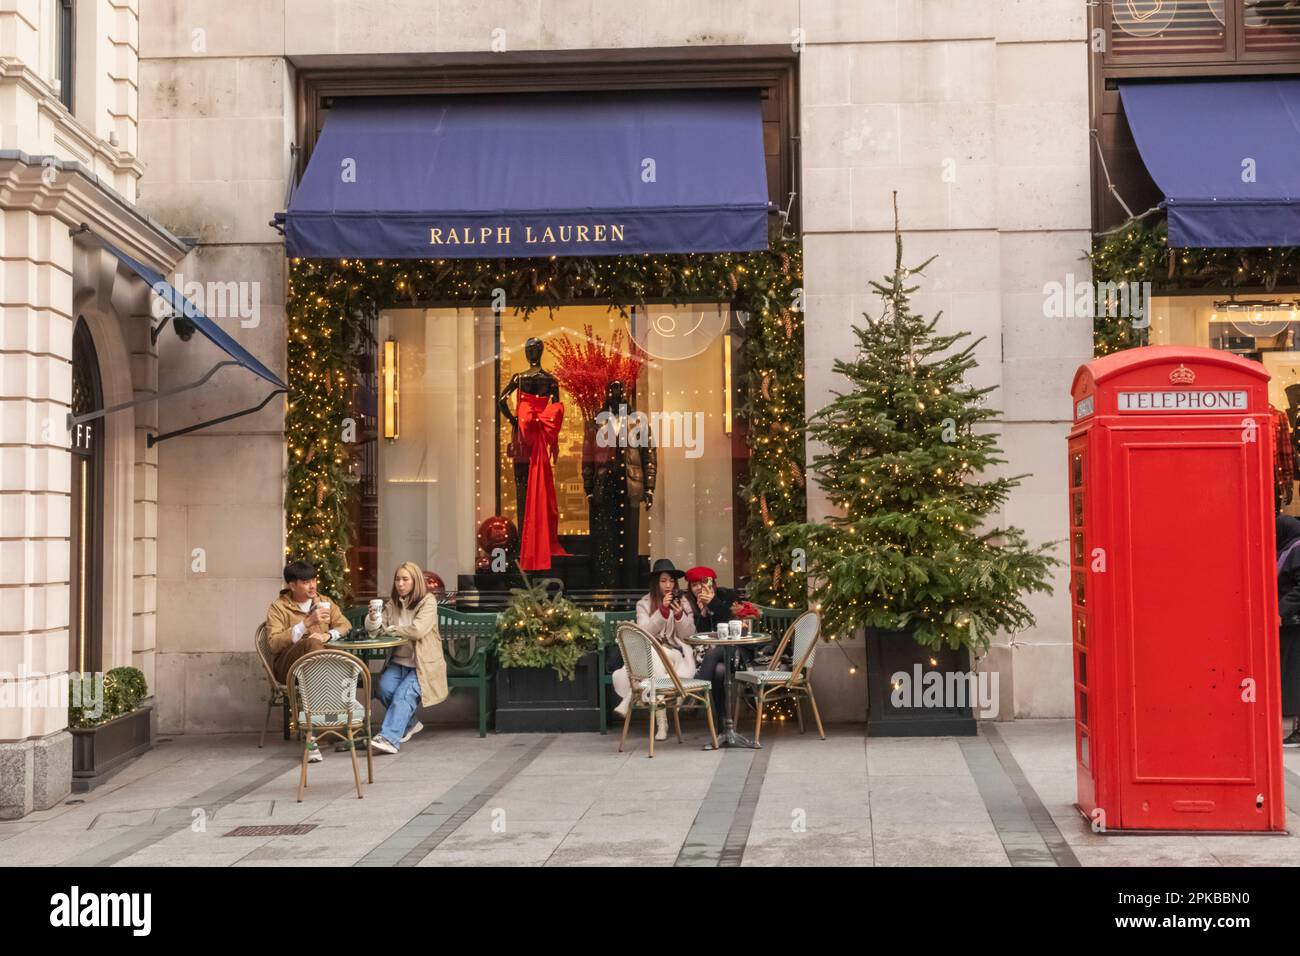 Inghilterra, Londra, Piccadilly, New Bond Street, vista esterna del negozio Ralph Lauren con decorazioni natalizie e tradizionale scatola telefonica rossa Foto Stock